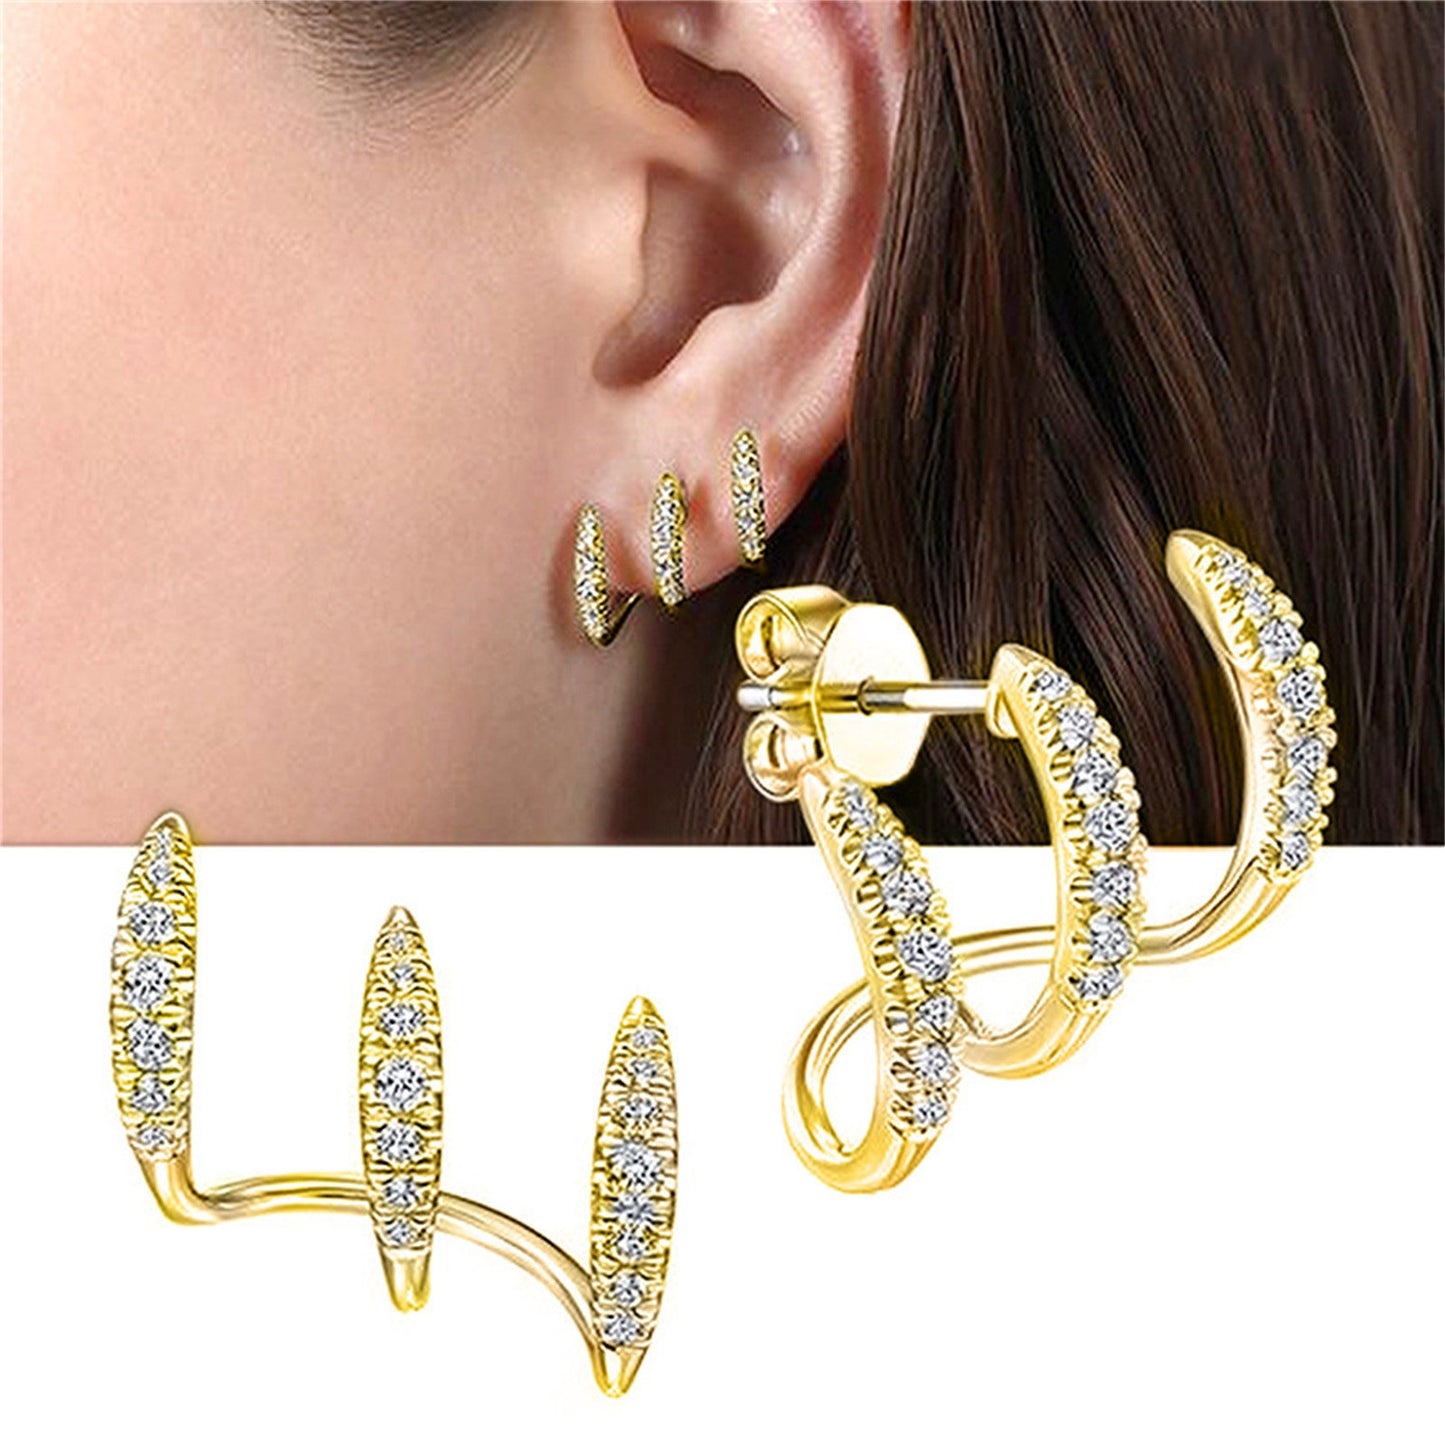 Minimalist Design Earrings, Three-layer Curved Ear Stud